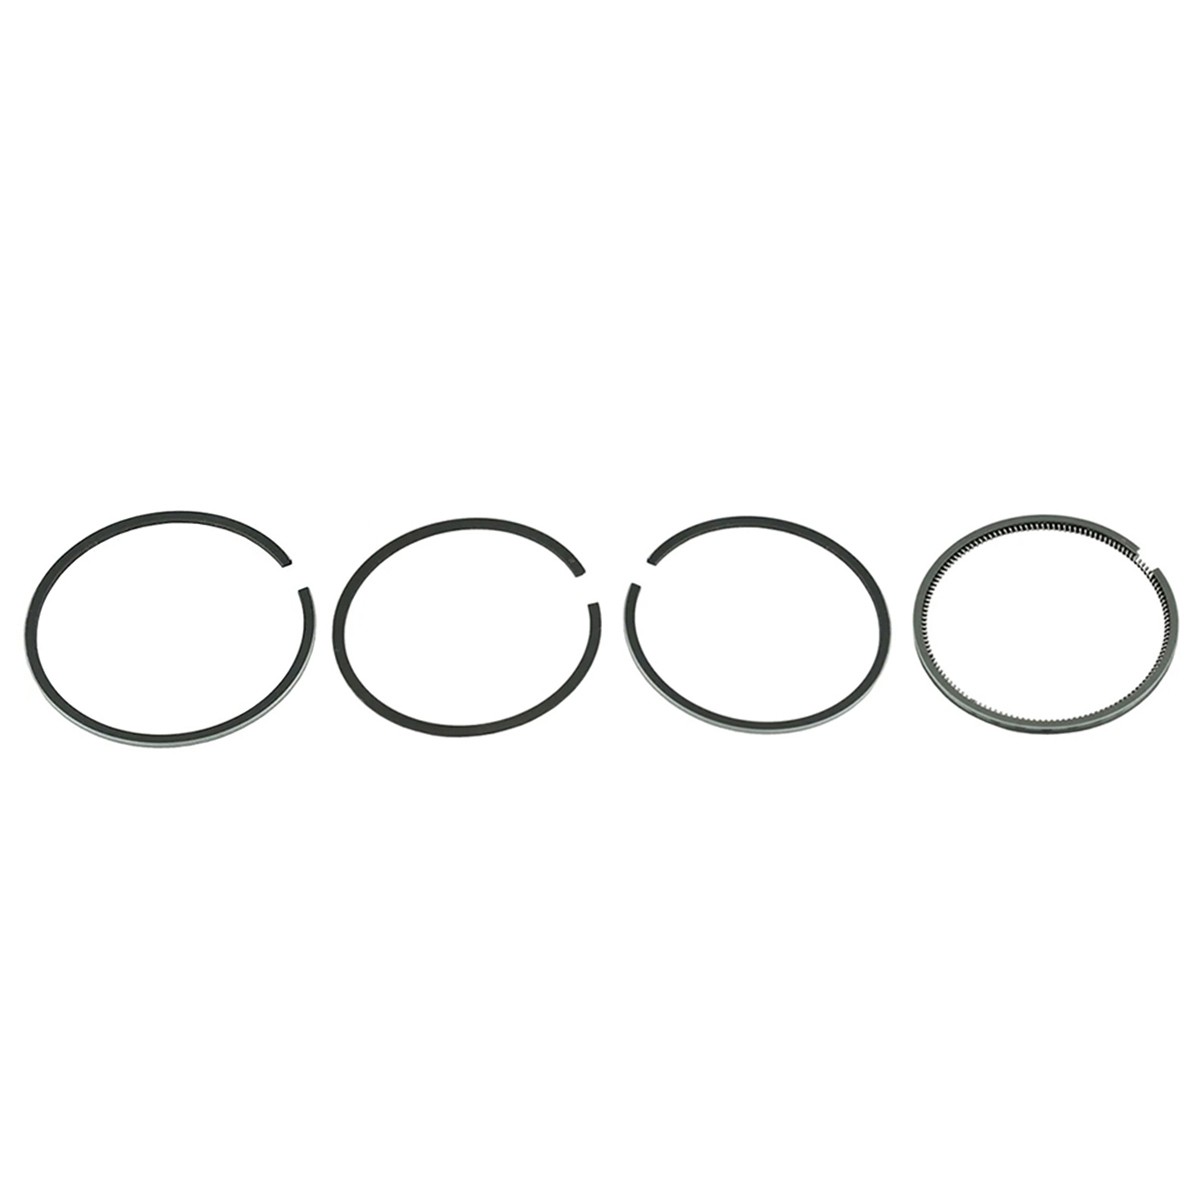 Piston rings / Ø 86 mm / 2 x 2 x 2 x 5 / Iseki TS2205/TS2210/TS2510 / 5681-218-1010-0 / 5691- 212-1010-0